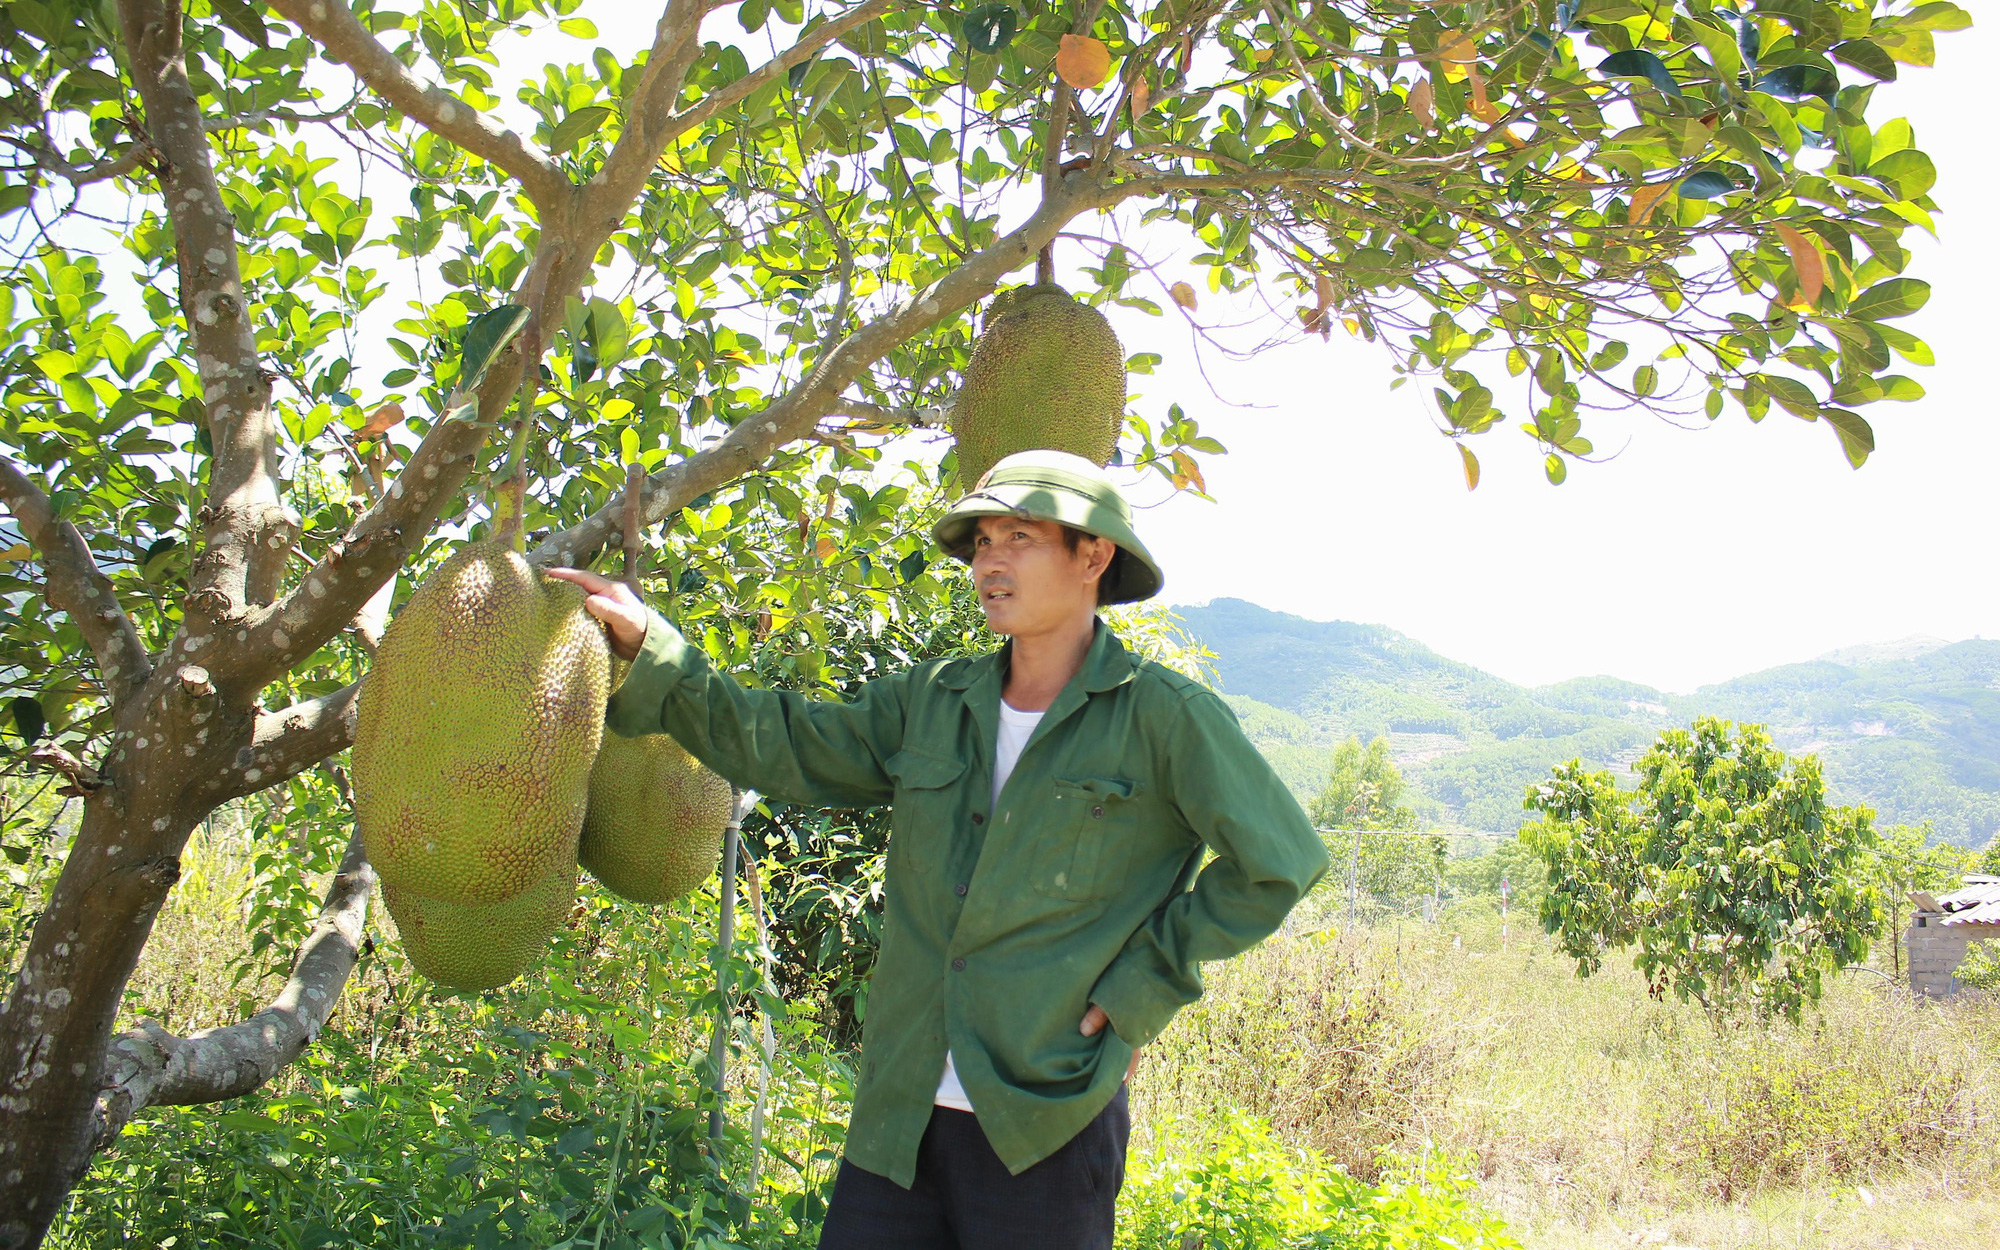 Nghệ An: Đùng đùng bỏ về quê trồng mít Thái, ai đi qua cũng khen "trái siêu to khổng lồ"